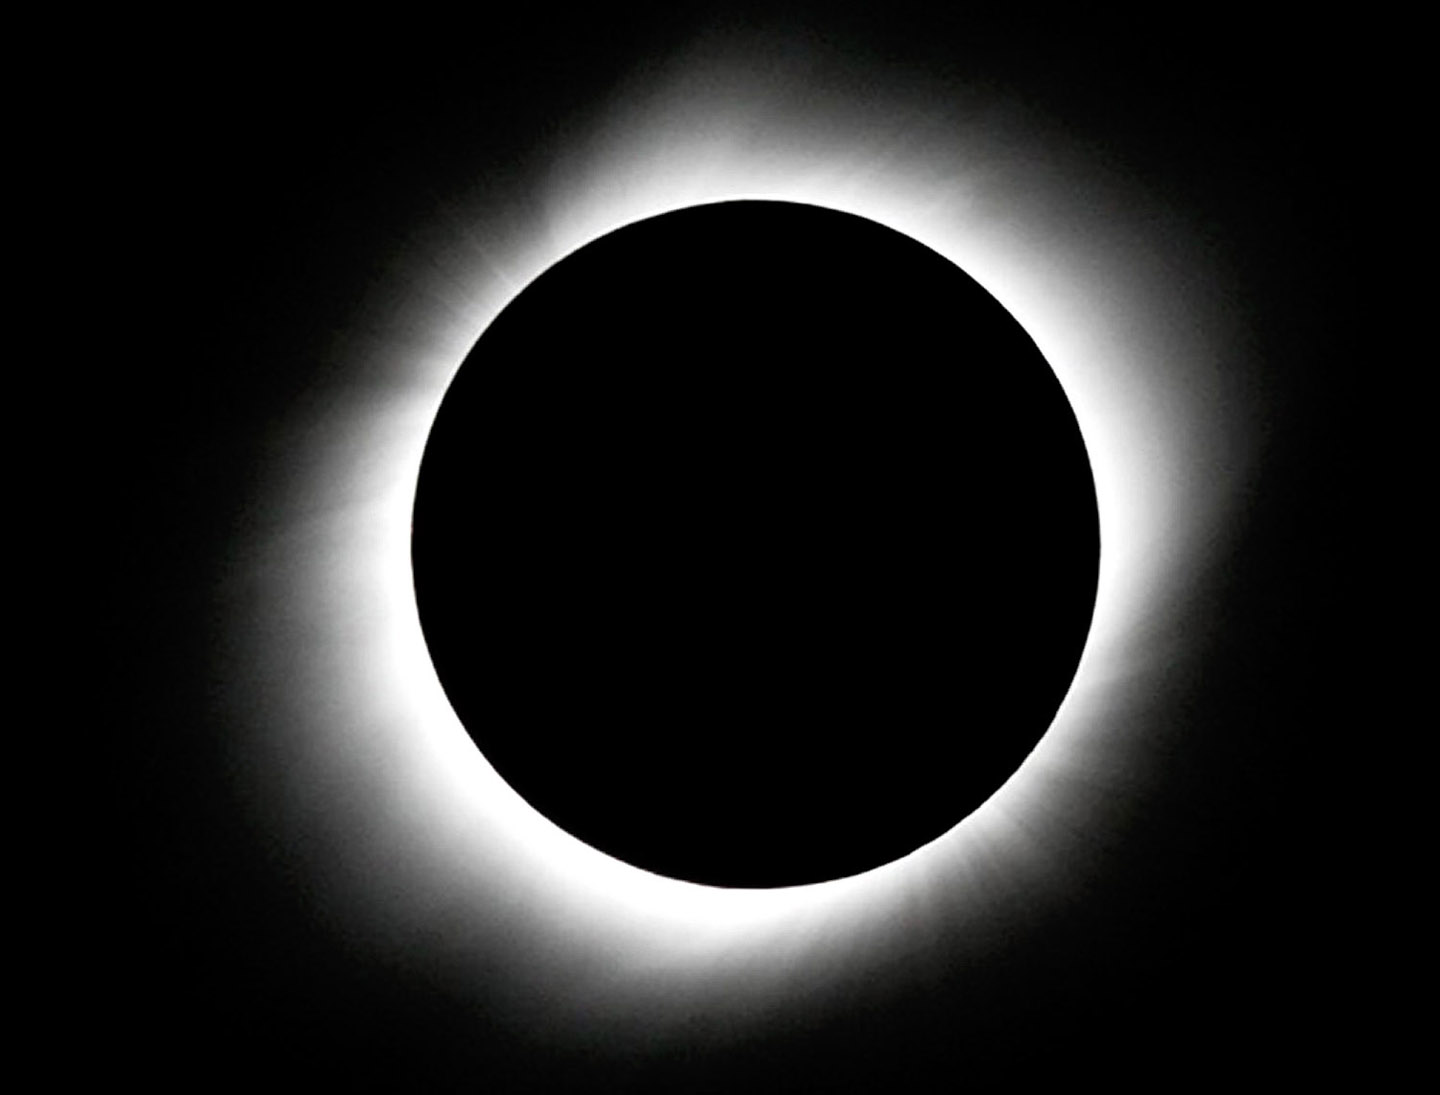 Eclipse 2009 - A60 - Corona by Ken Wilson